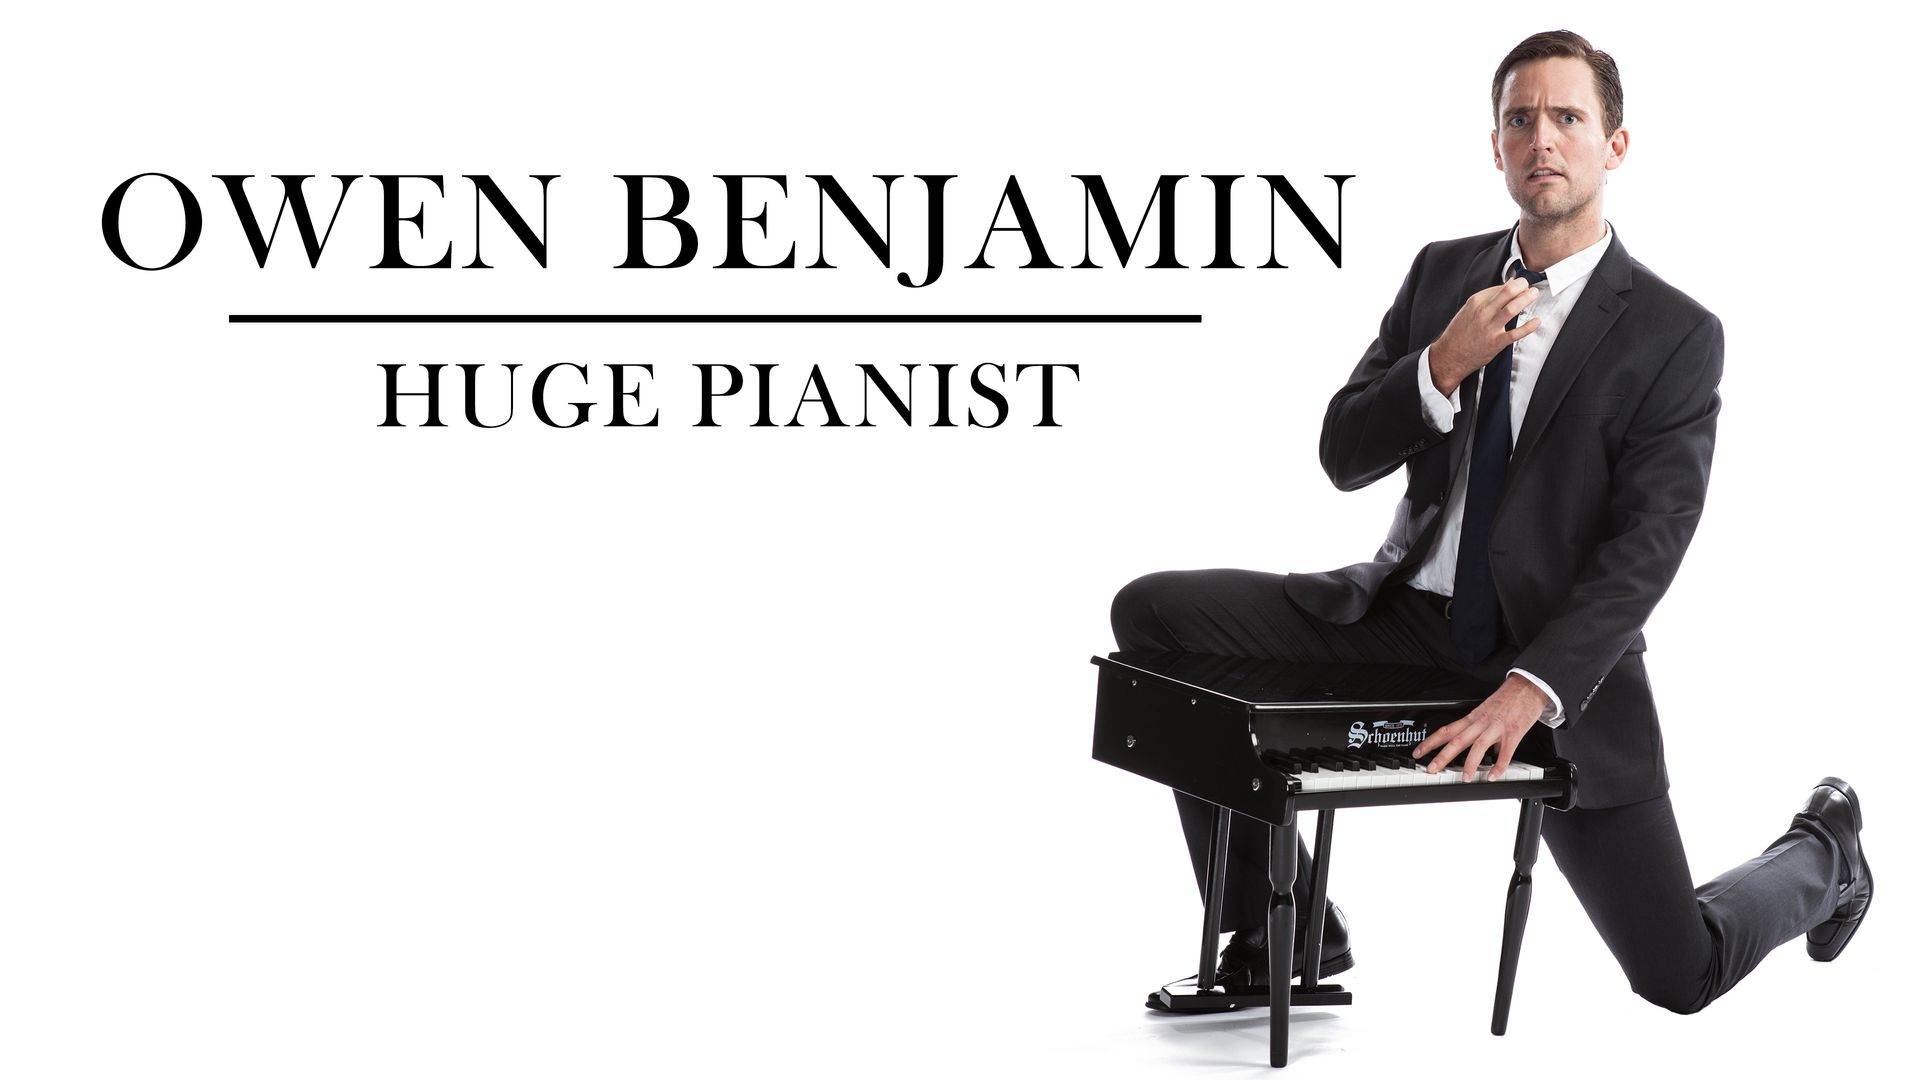 Owen Benjamin: Huge Pianist Backdrop